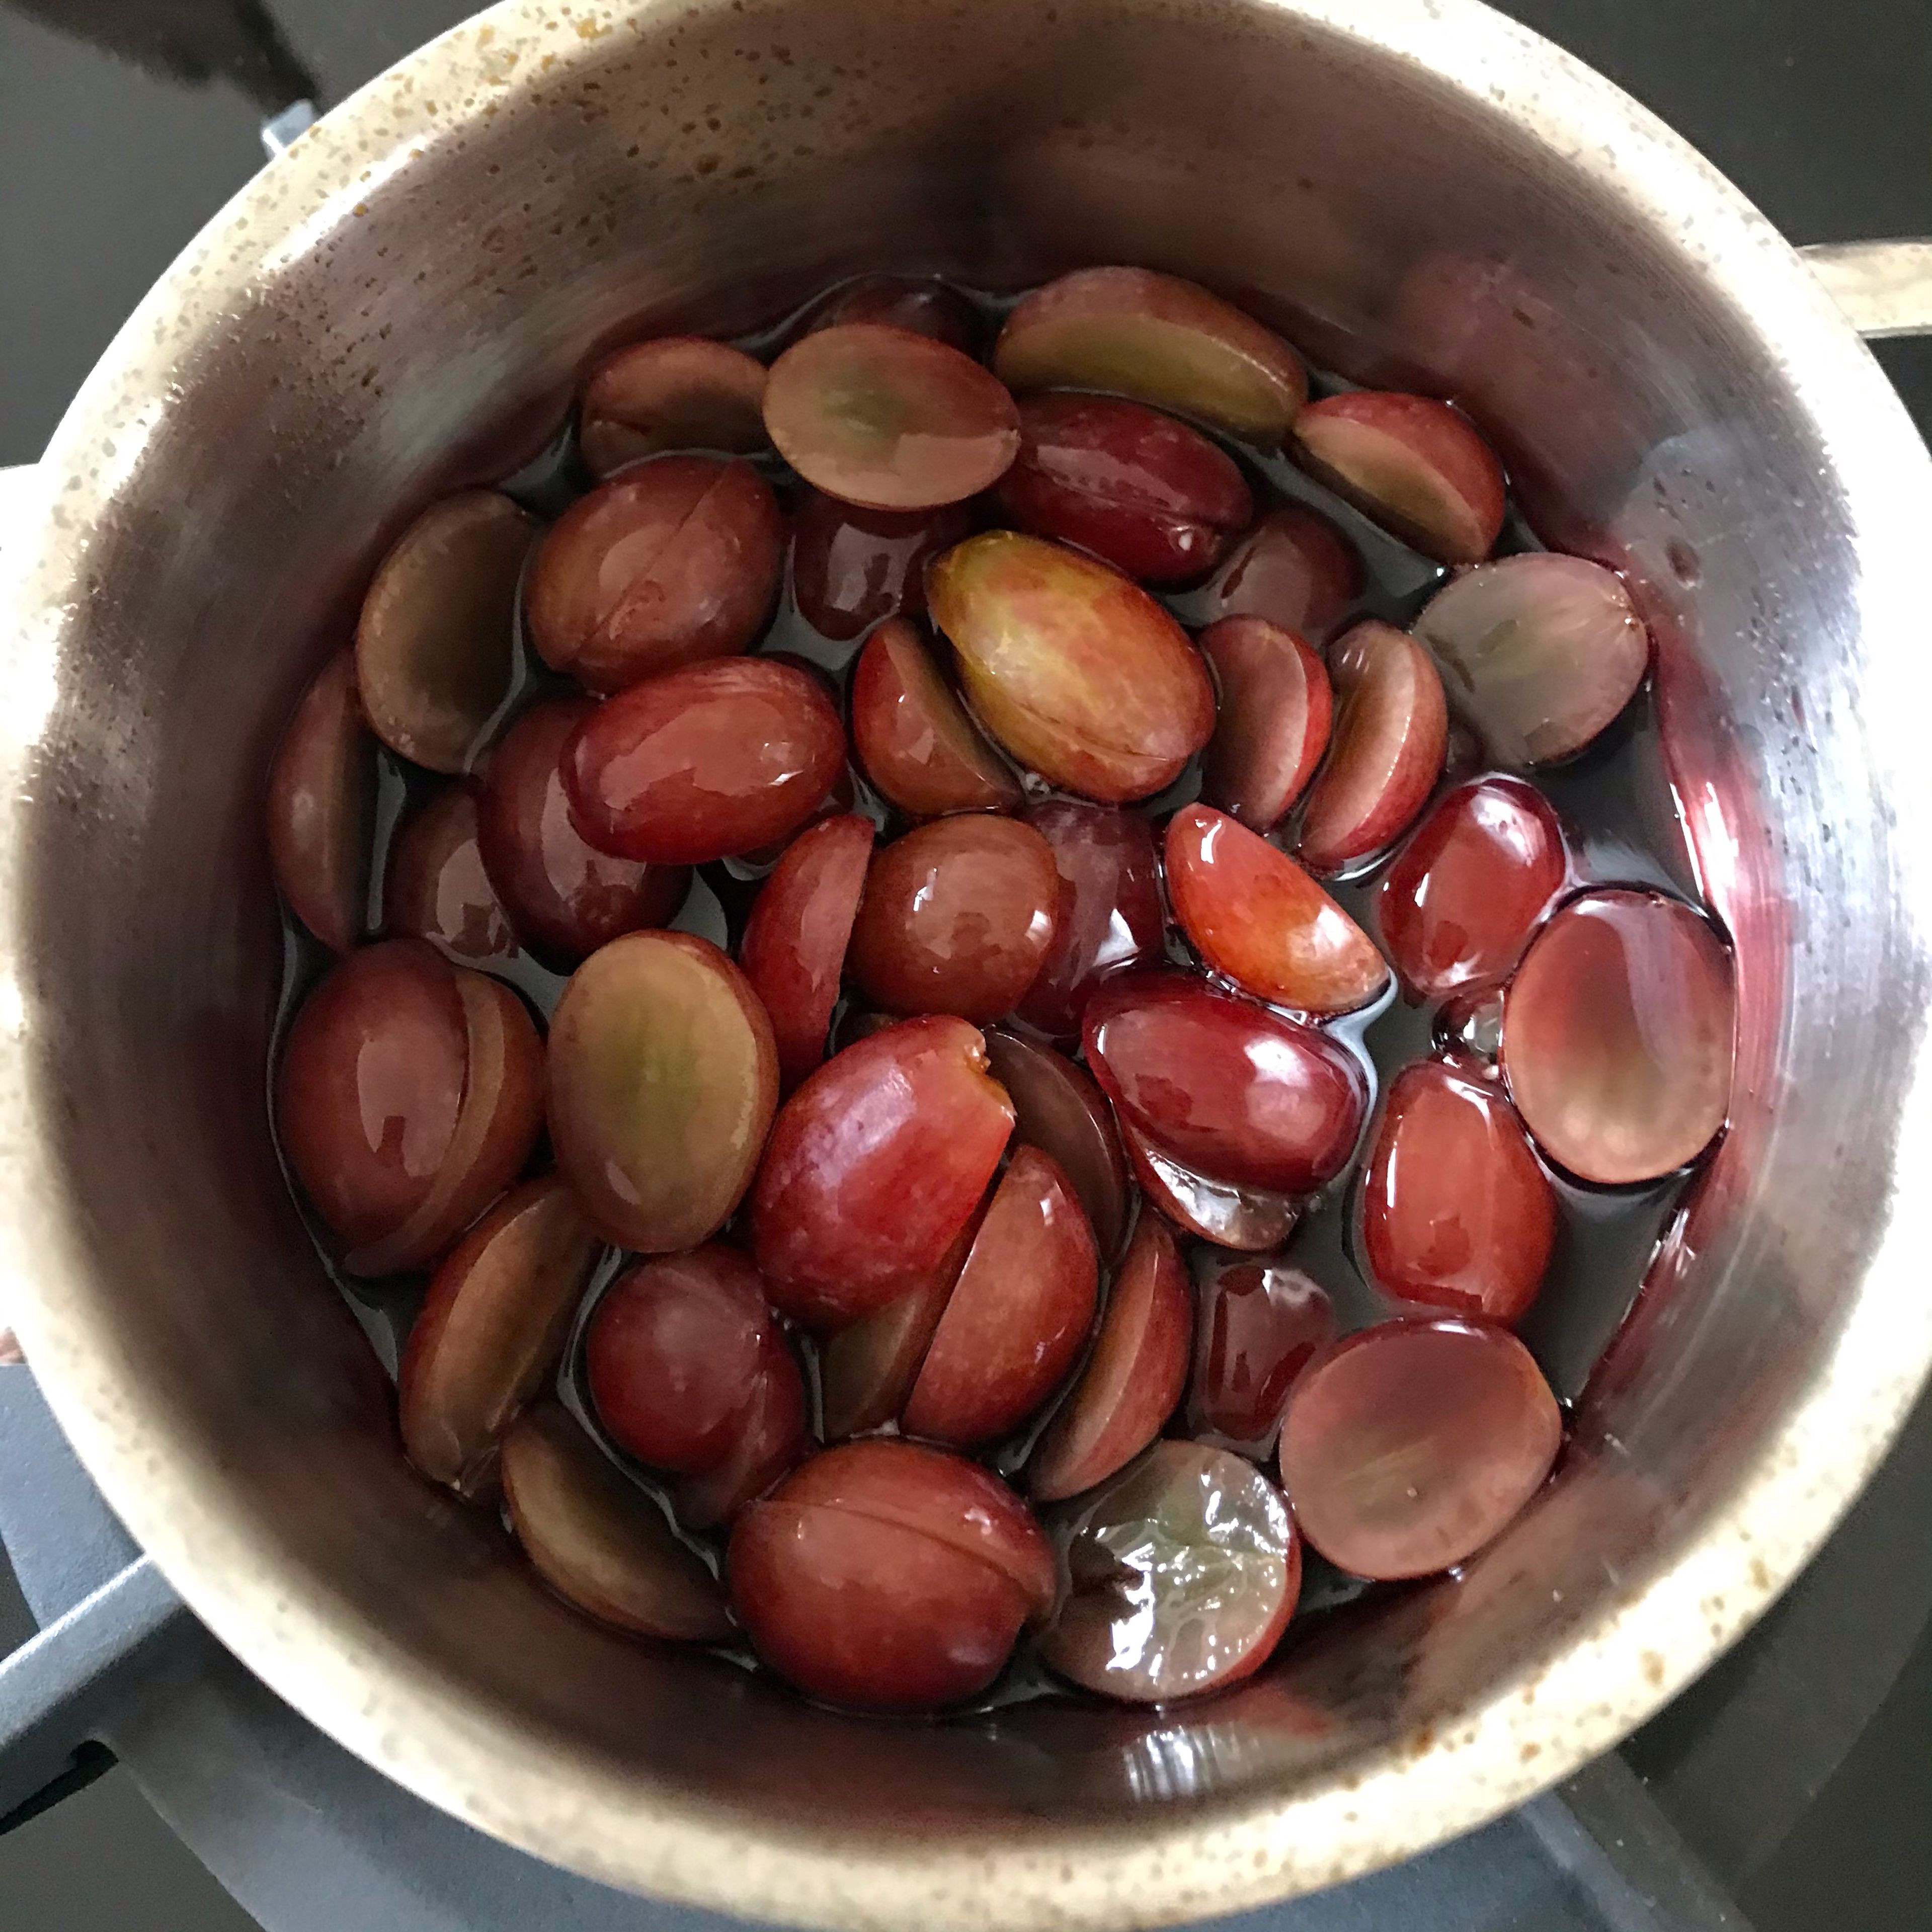 Portwein und Traubensaft in einen Topf geben und einreduzieren lassen, bis lediglich 1/3 der Flüssigkeit noch übrig ist. Die Weintrauben halbieren und in die etwas abgekühlte Flüssigkeit rühren.